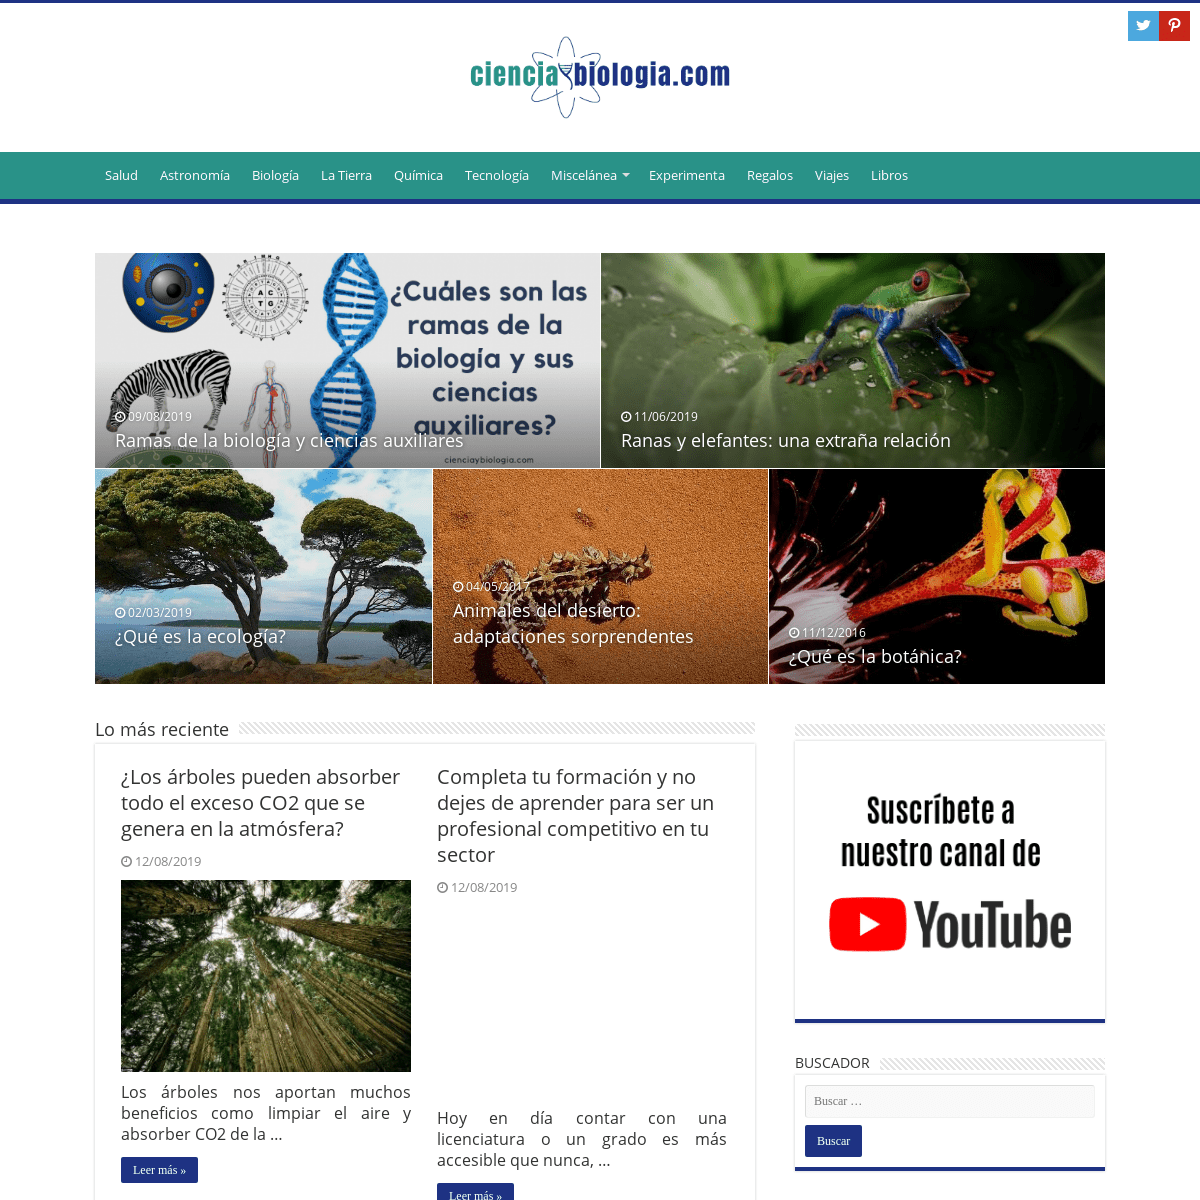 Ciencia y biología - Portal de biología y ciencias naturales